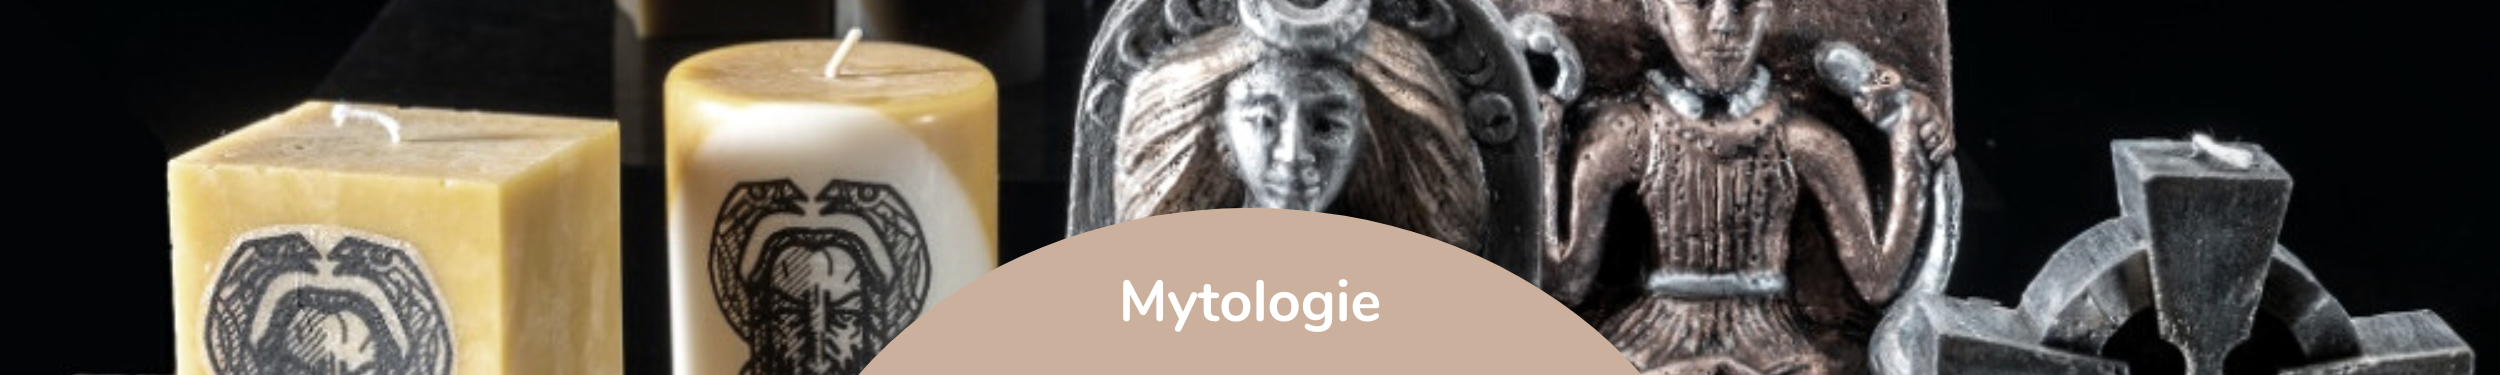 mytologie